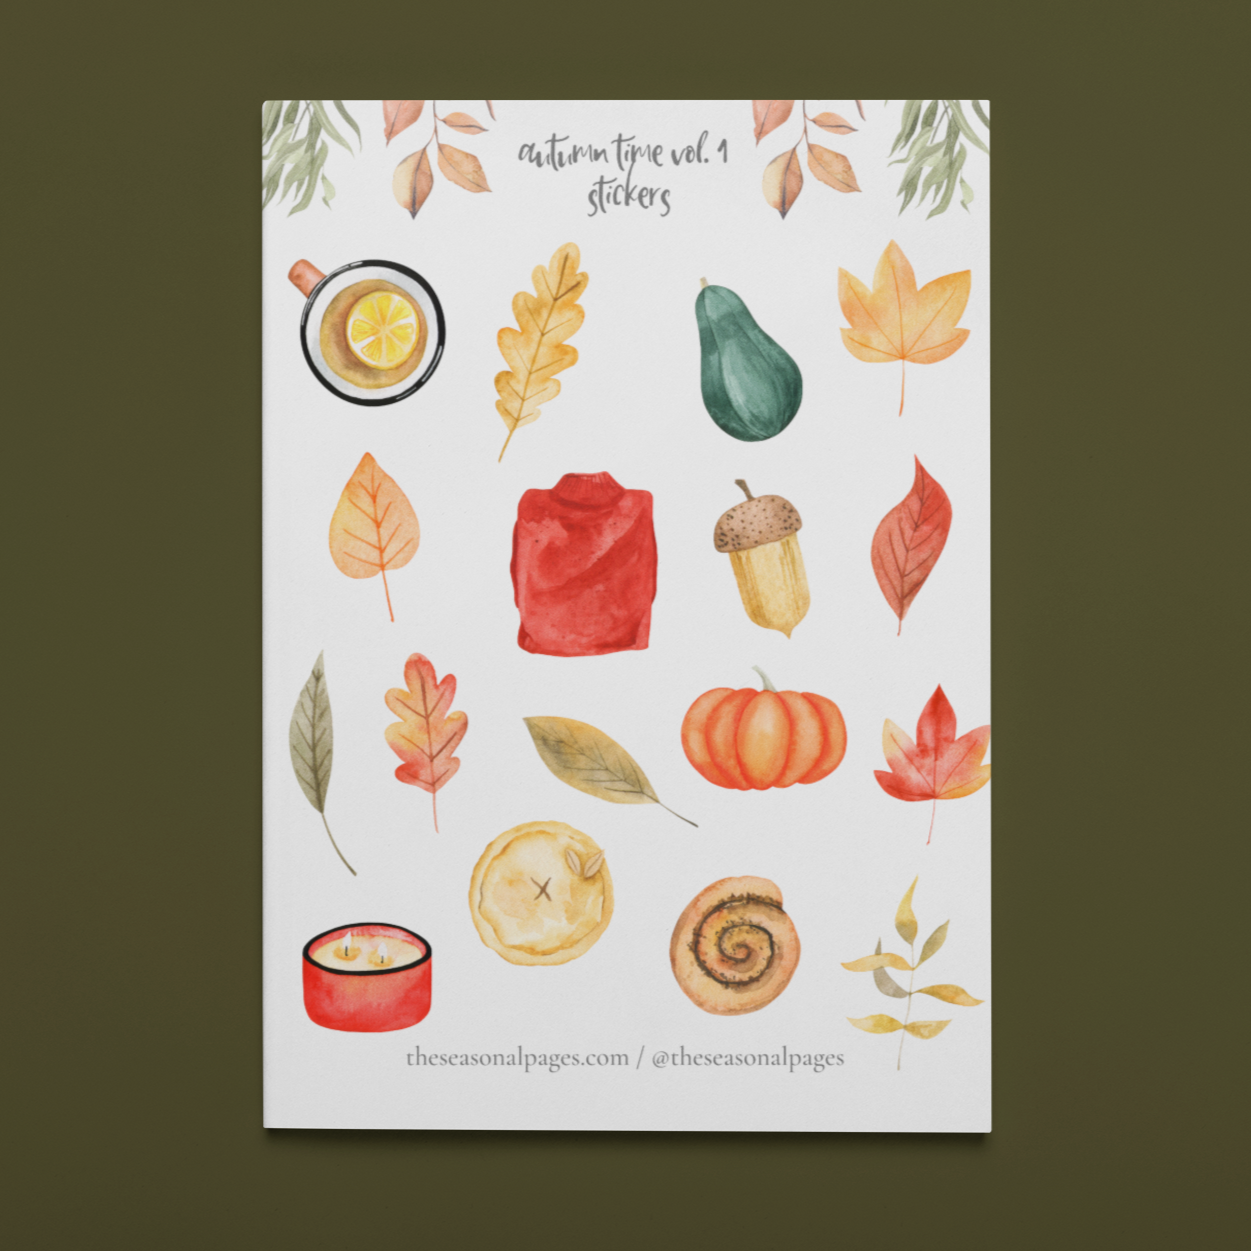 Printable Autumn Time Vol. 1 Sticker Set